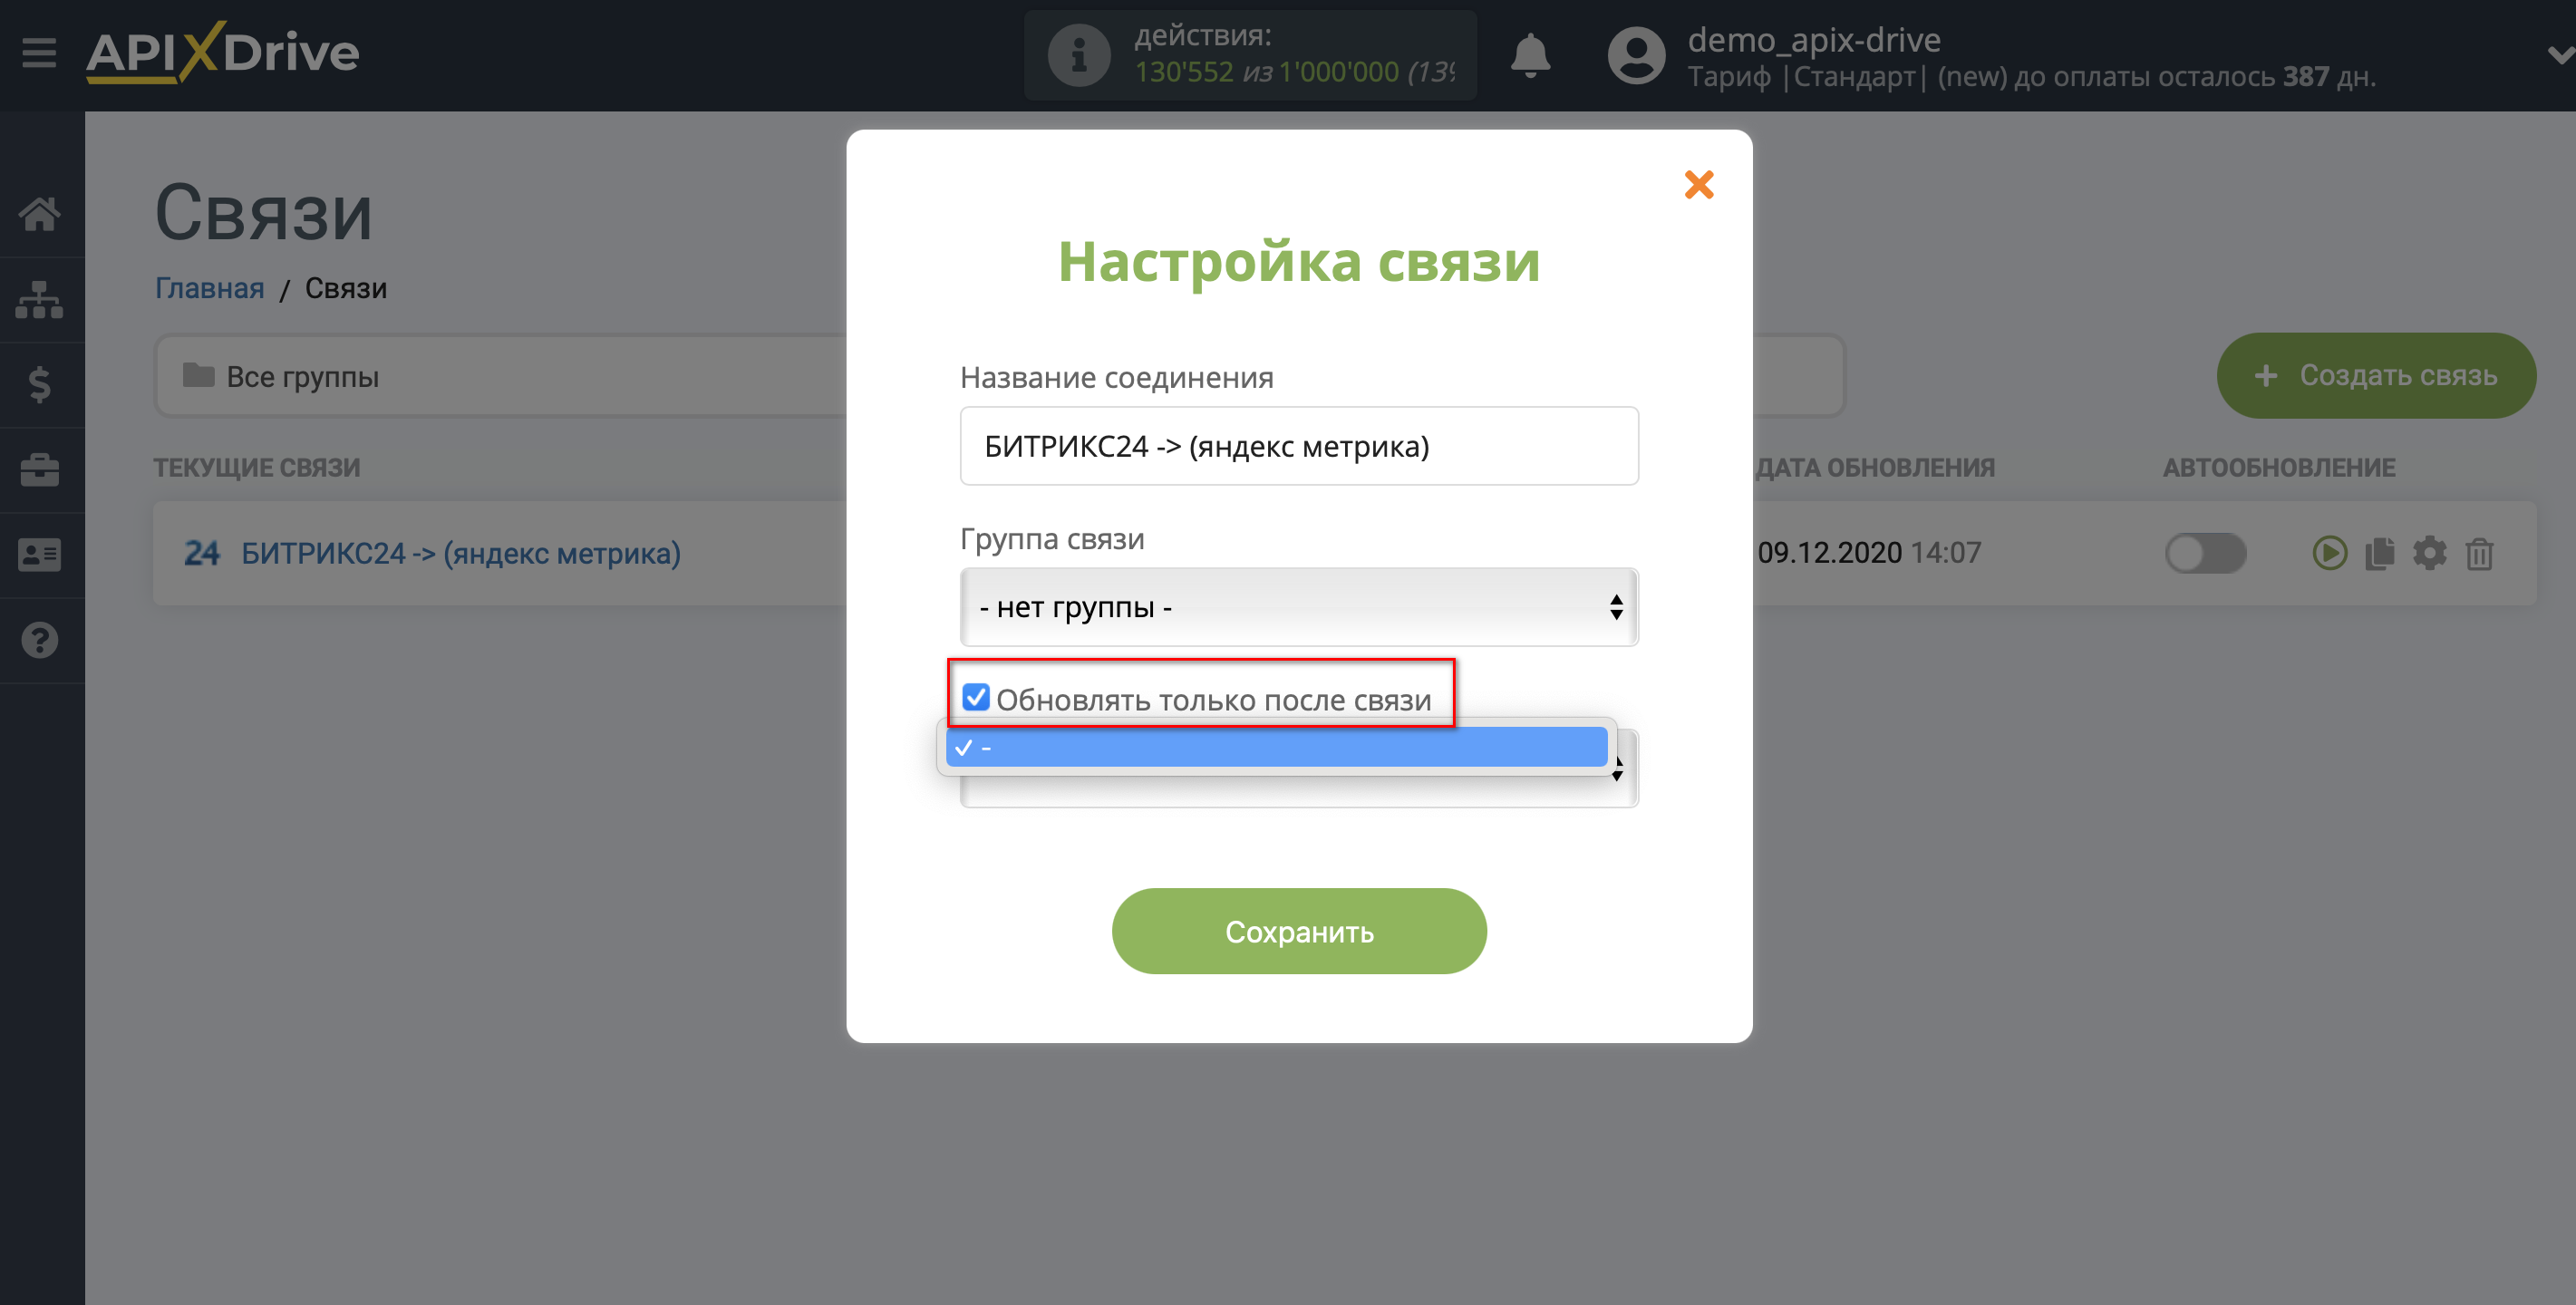 Импорт данных по конверсиям из Битрикс24 в Яндекс.Метрику | Приоритет обновления